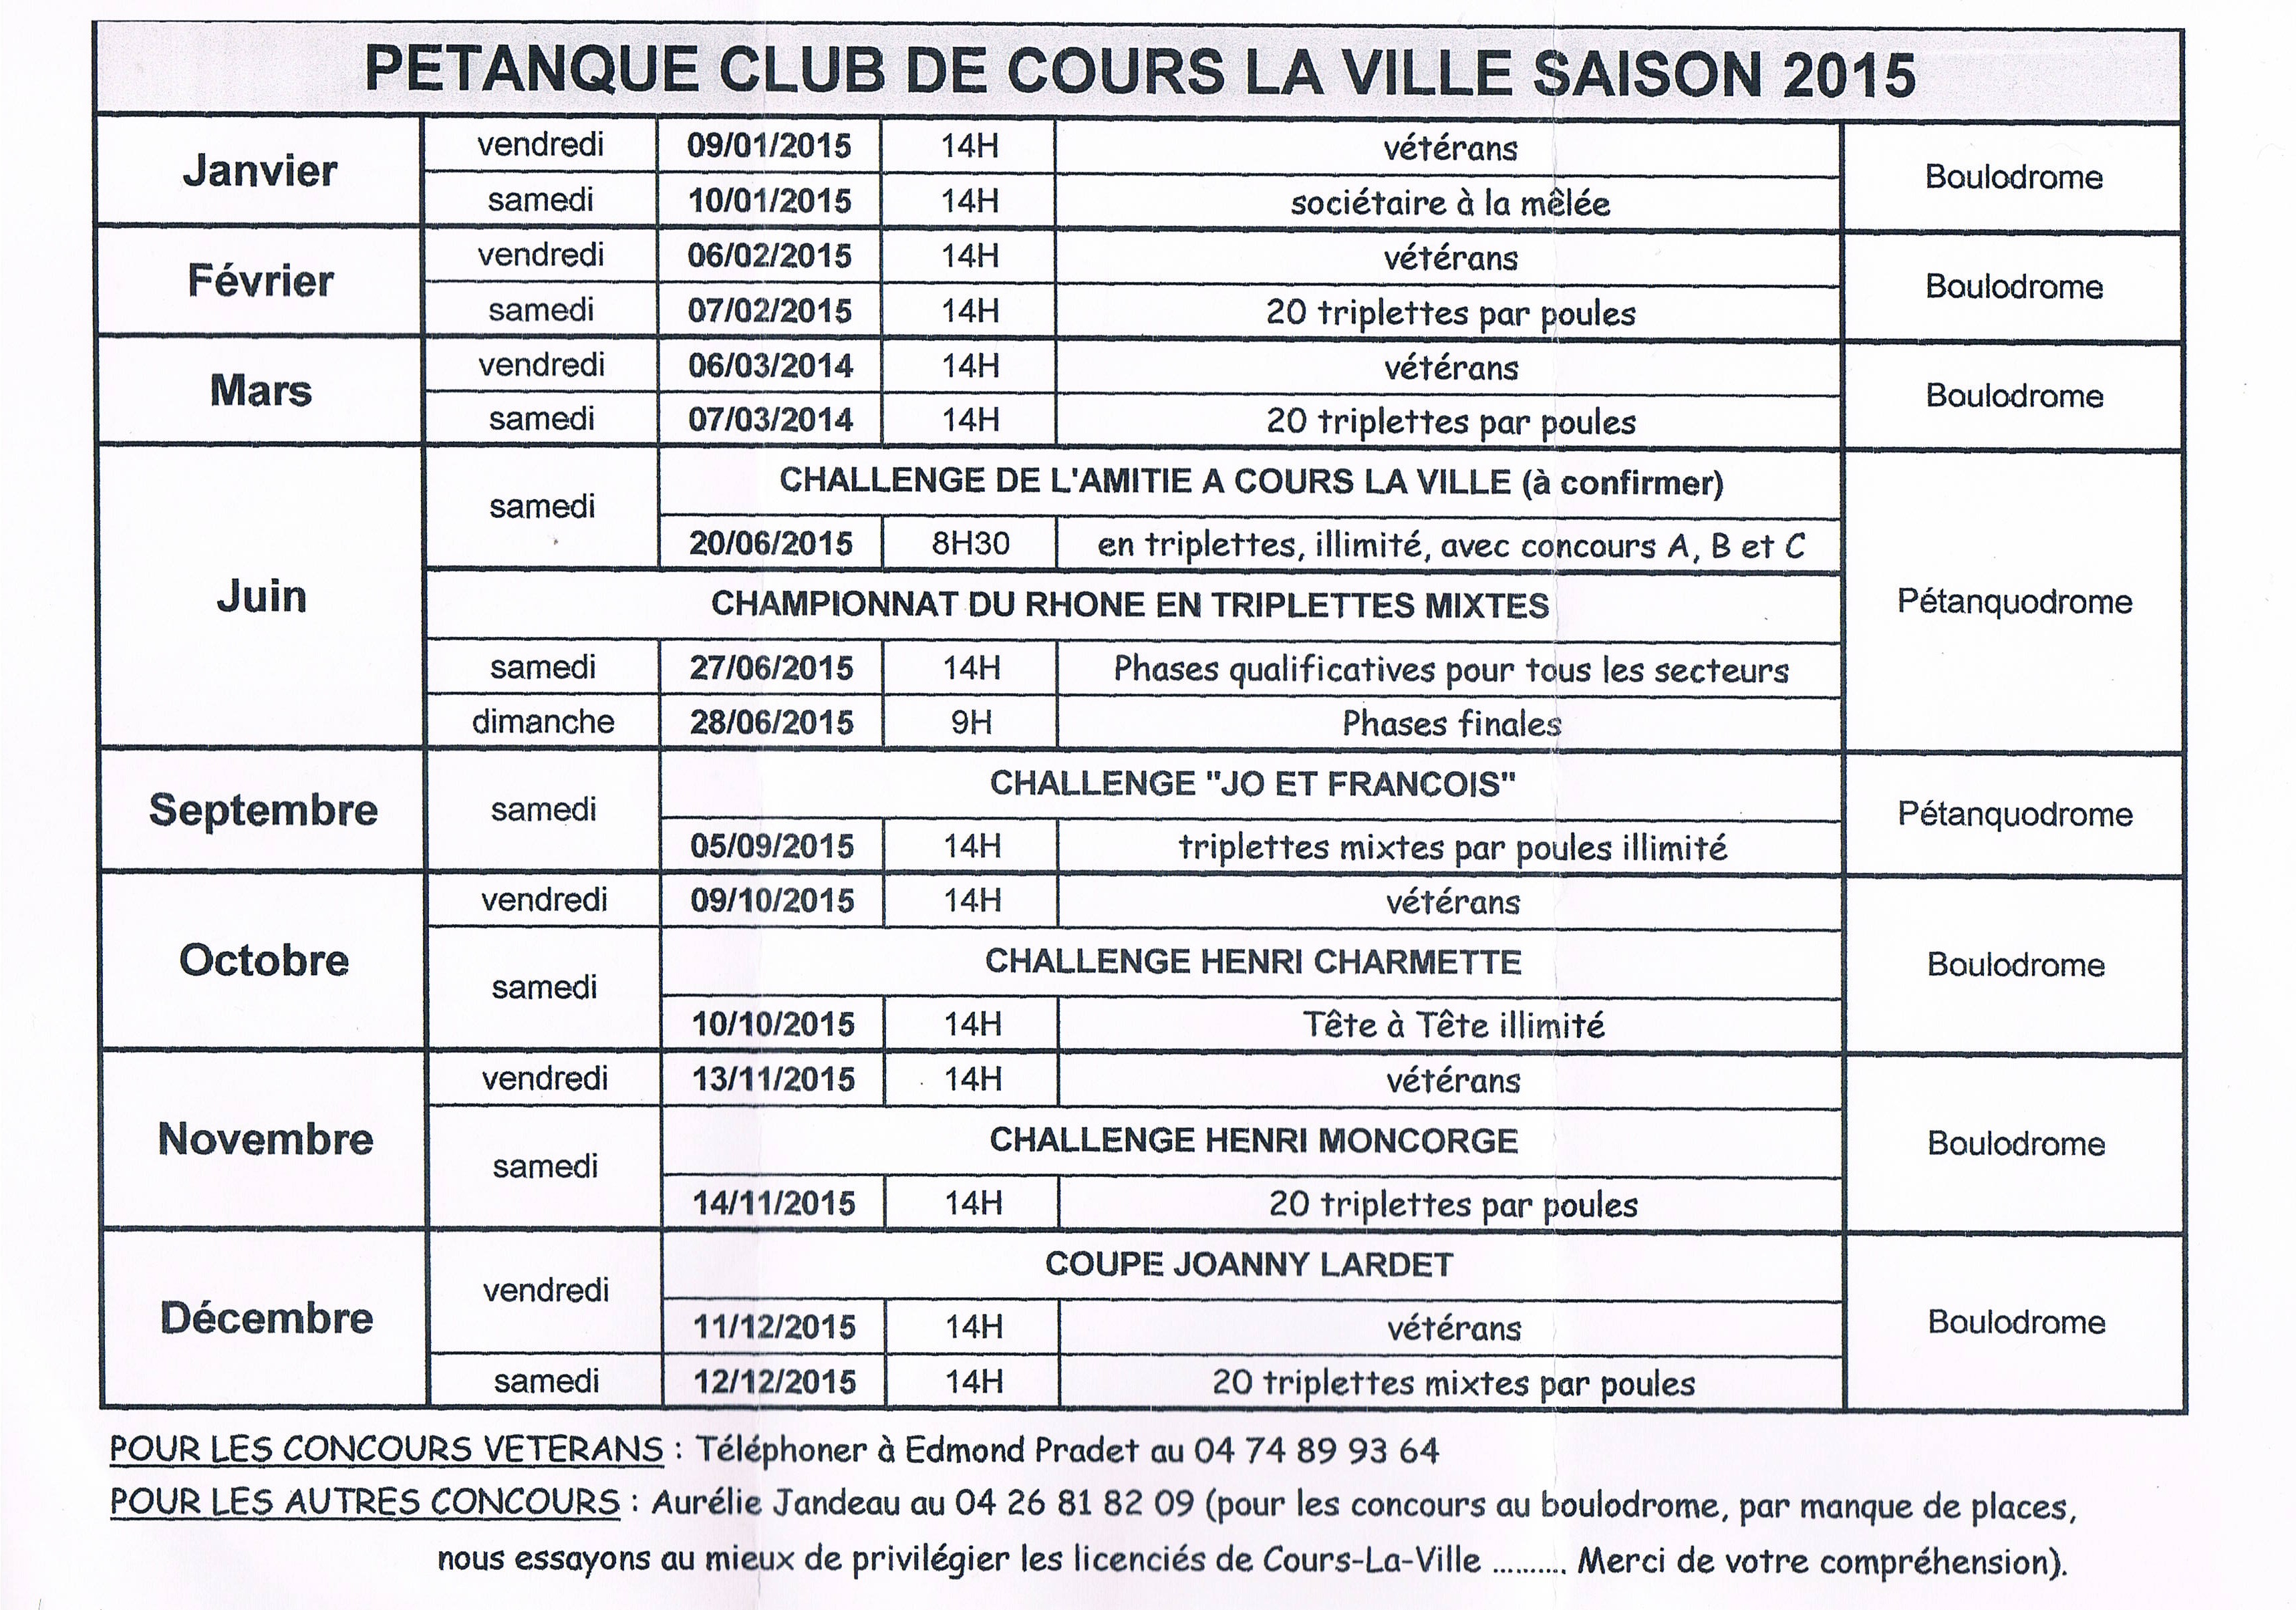 Calendrier saison 2015 au pétanque club de Cours-la-ville